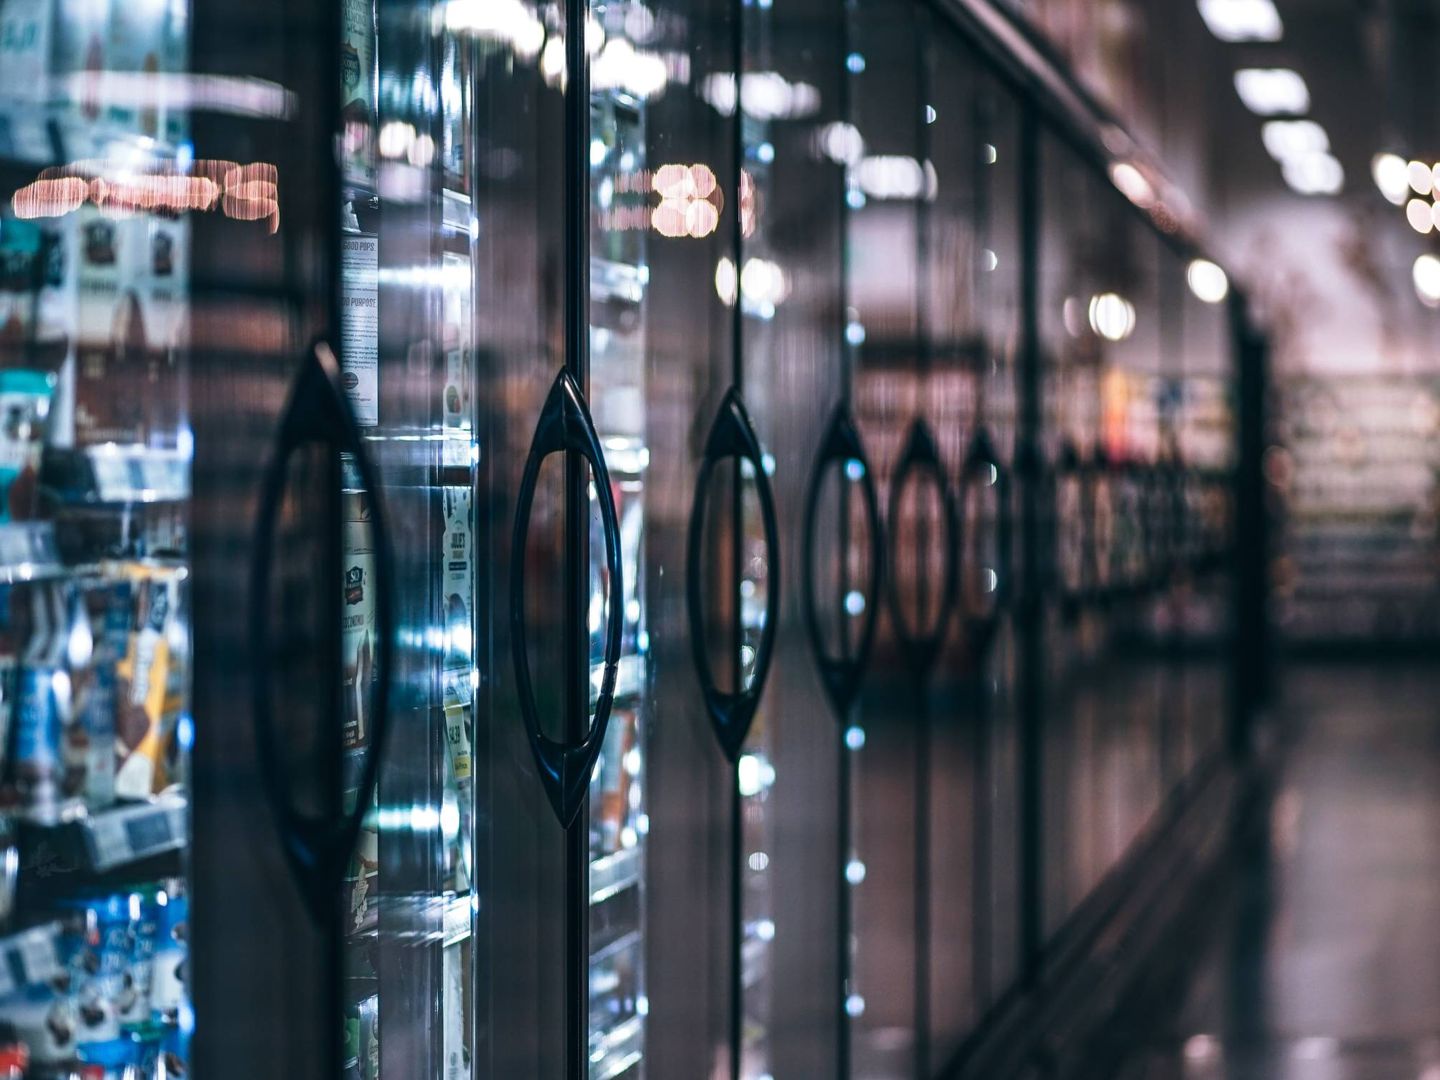 Los congeladores verticales se utilizan mucho en supermercados y tiendas